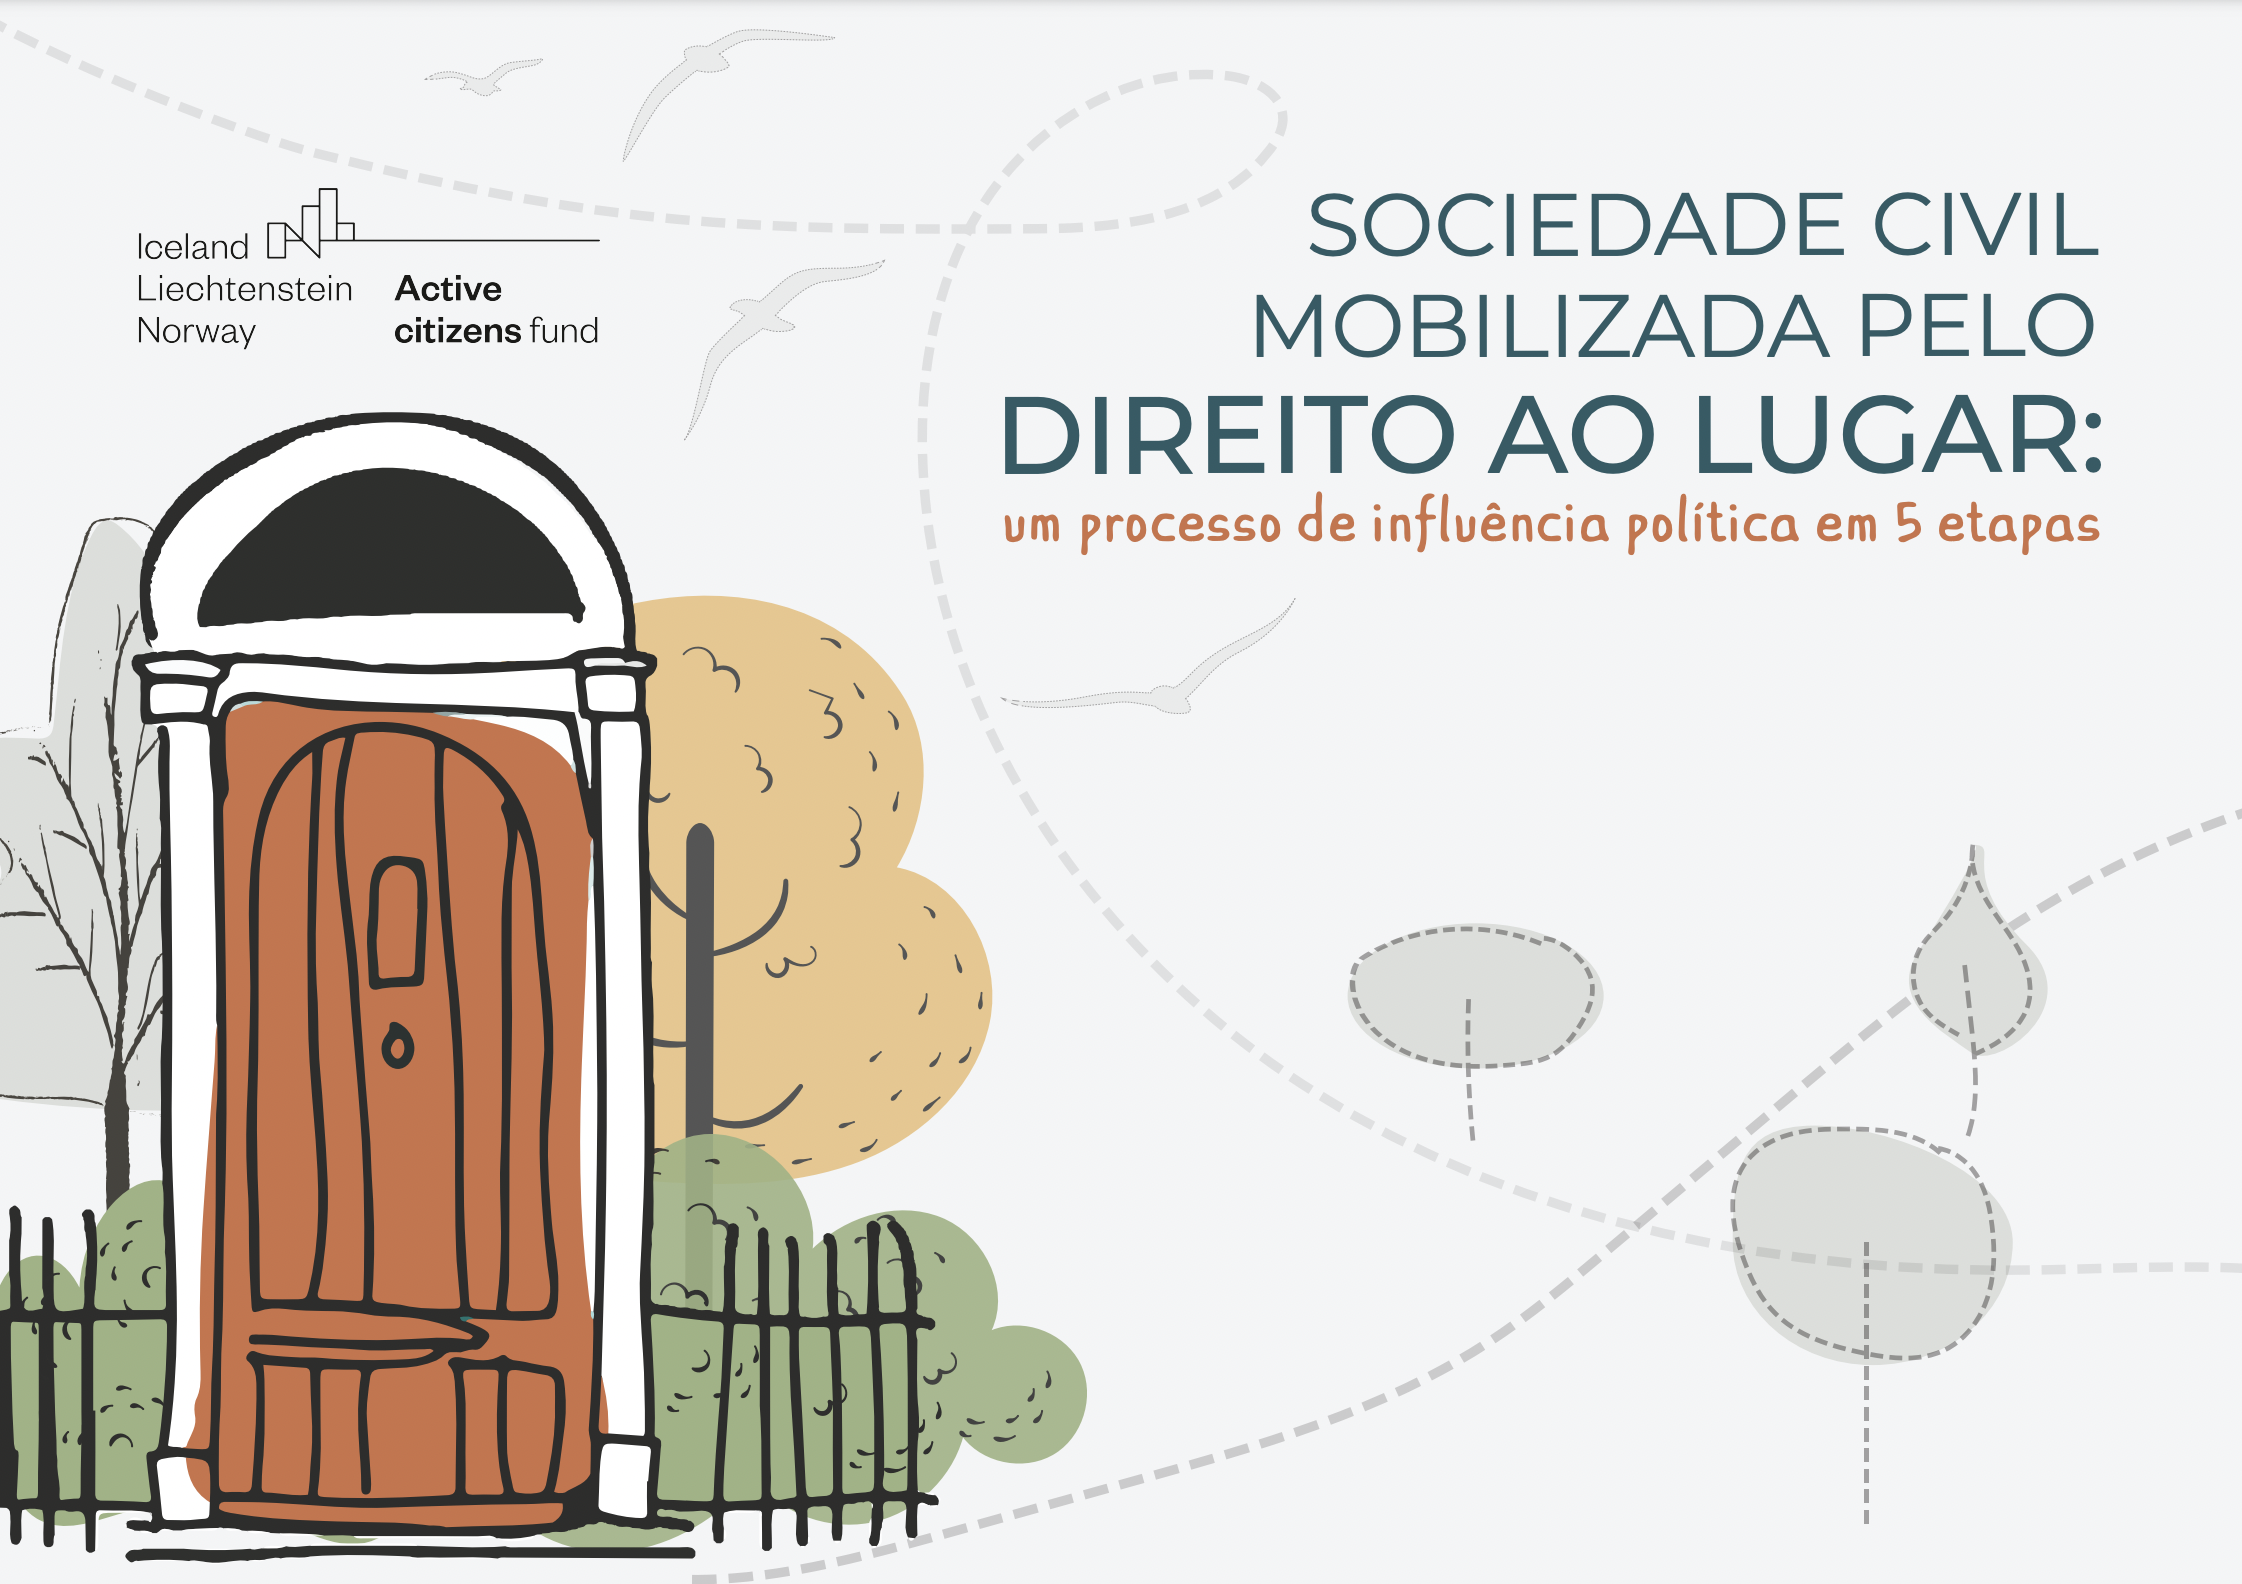 Sociedade civil mobilizada pelo Direito ao Lugar: um processo de influência política em 5 etapas